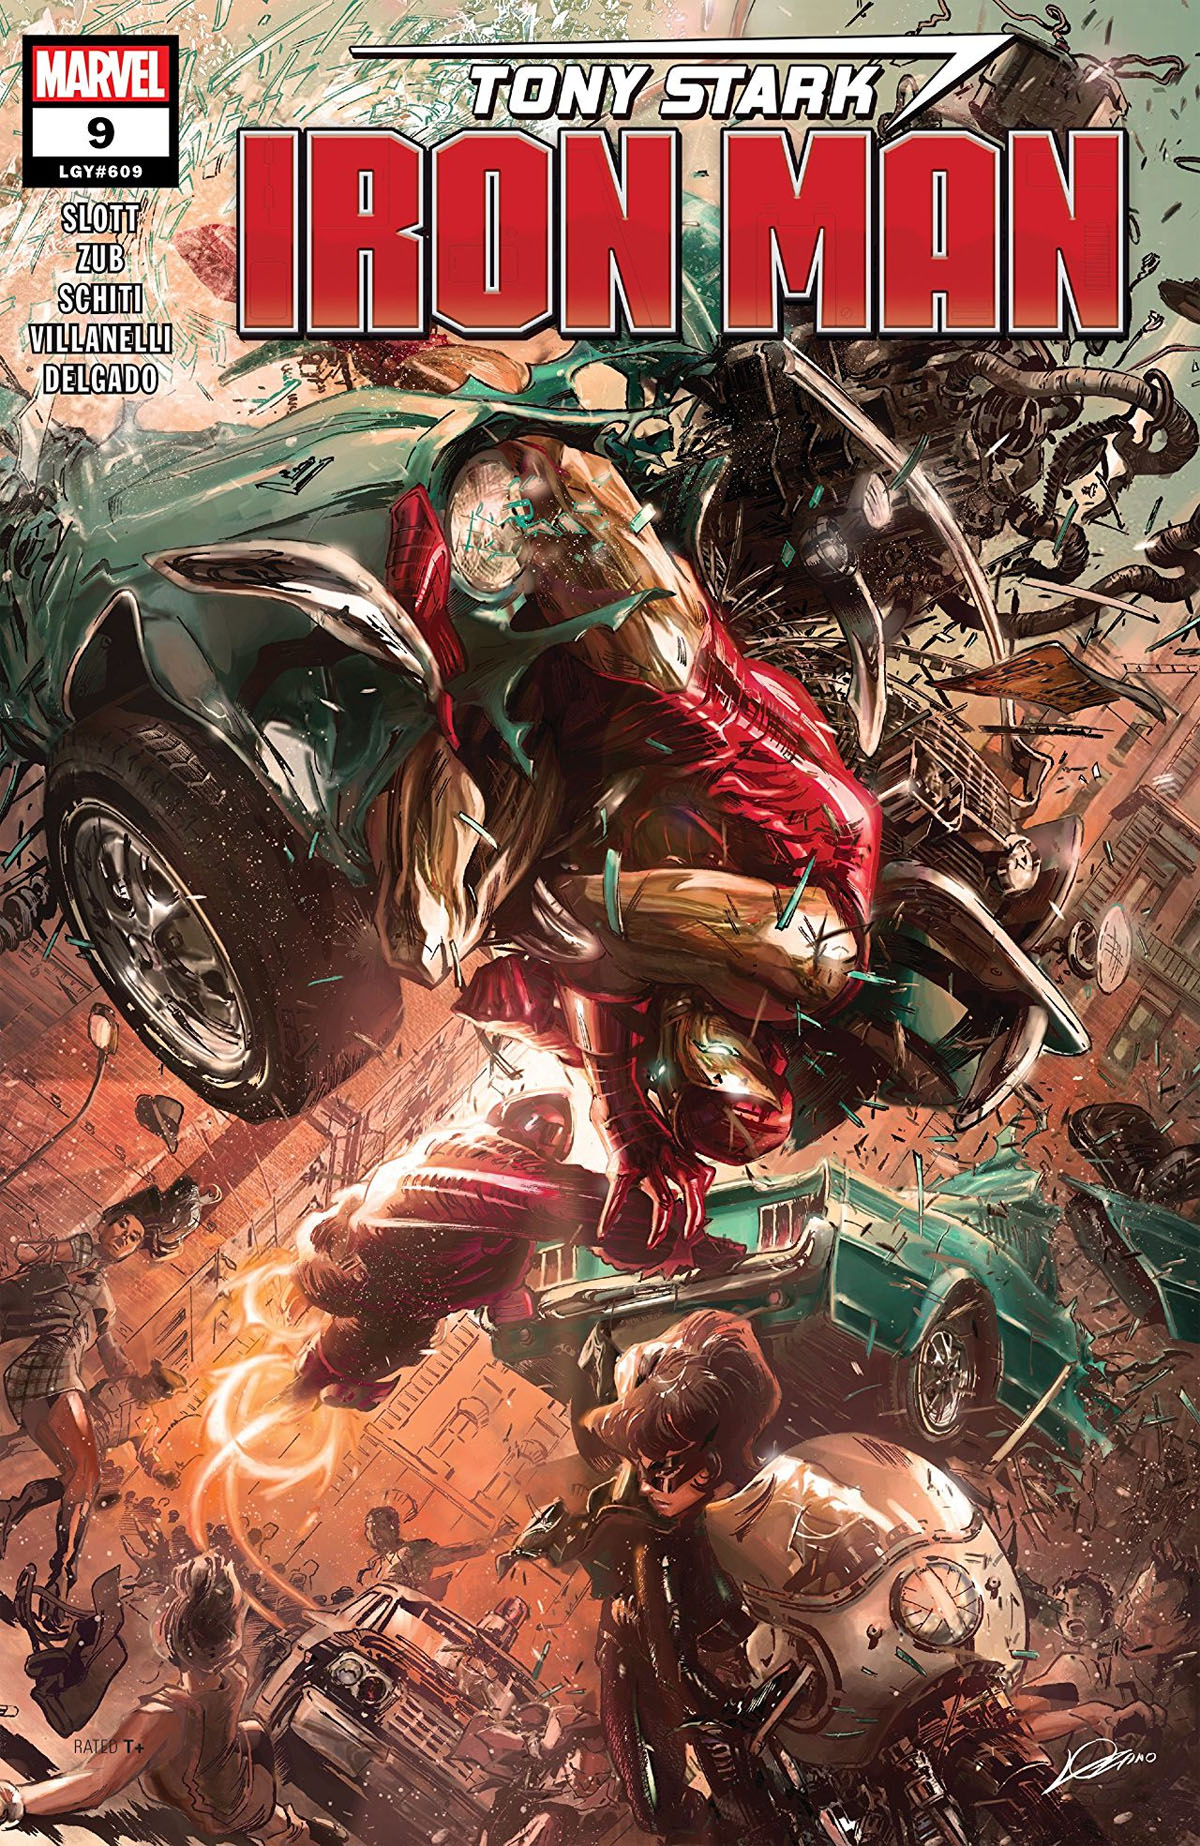 Tony Stark: Iron Man #9 cover